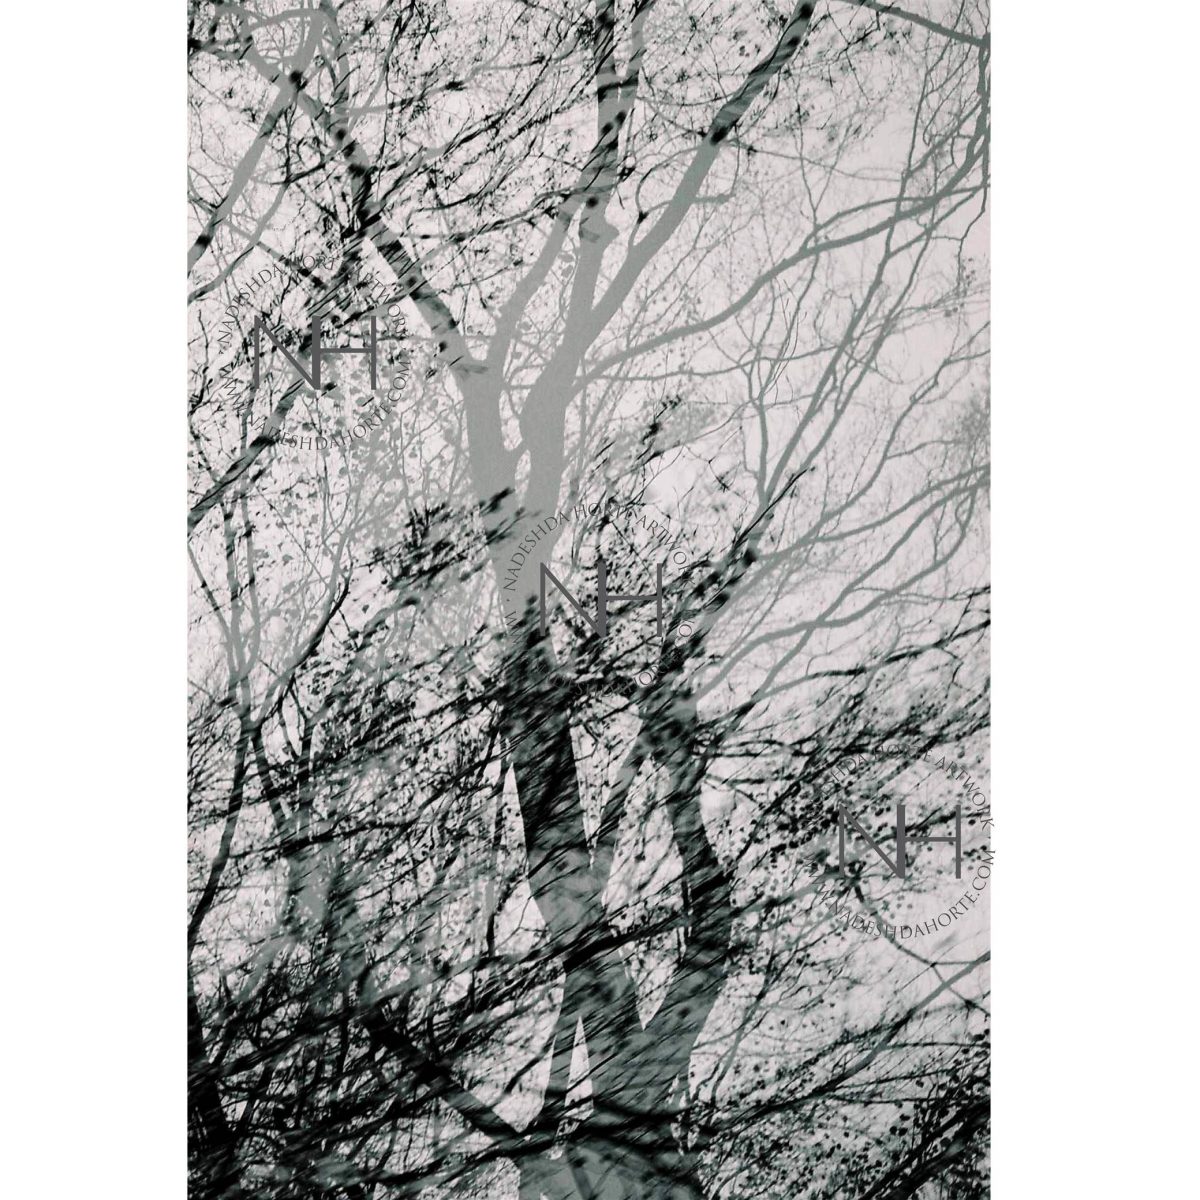 Stille, Waldspaziergang, Schwarz Weiß Fotografie, Nadeshda Horte